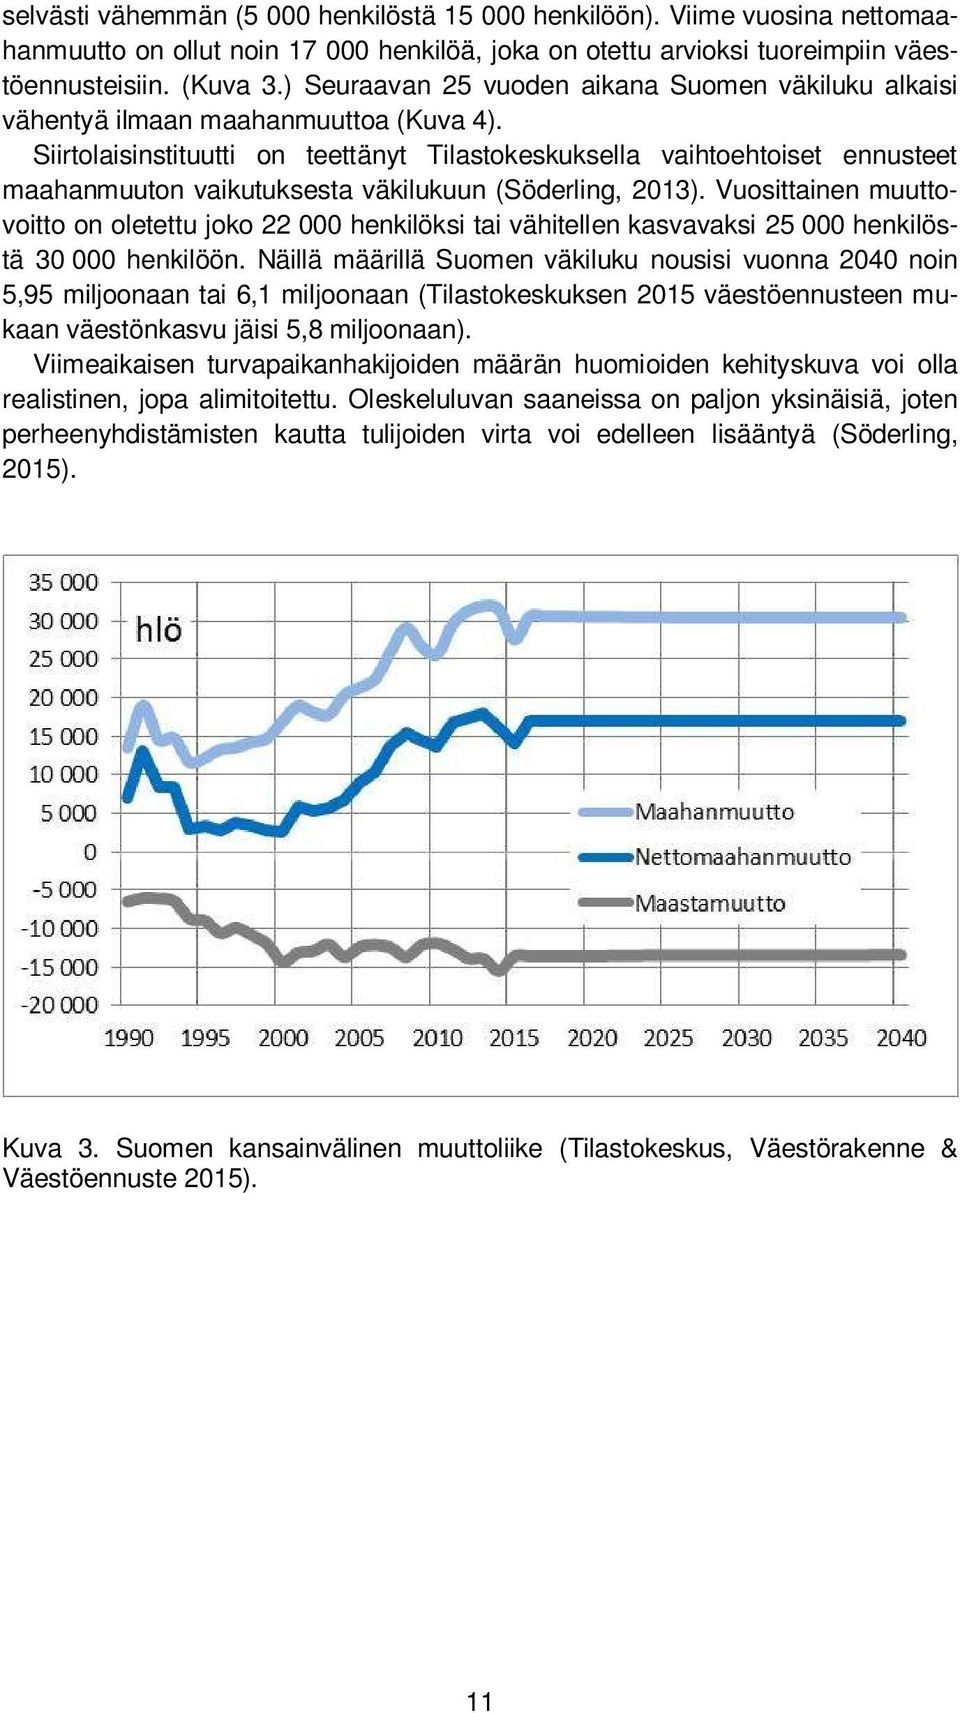 Siirtolaisinstituutti on teettänyt Tilastokeskuksella vaihtoehtoiset ennusteet maahanmuuton vaikutuksesta väkilukuun (Söderling, 2013).